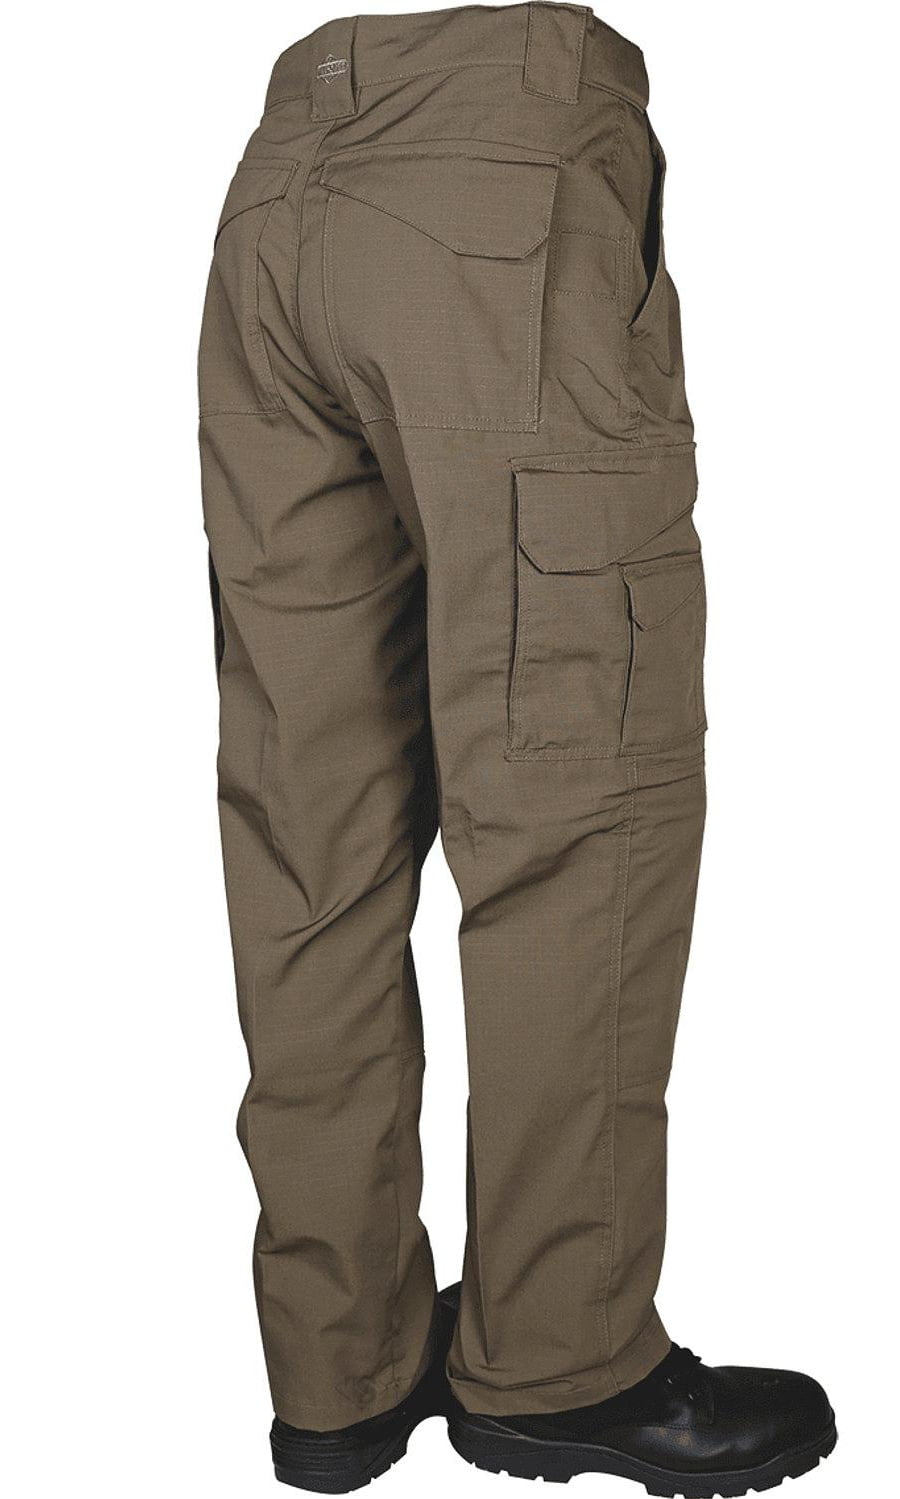 Tru-Spec Men's 24-7 Series Original Tactical Pant